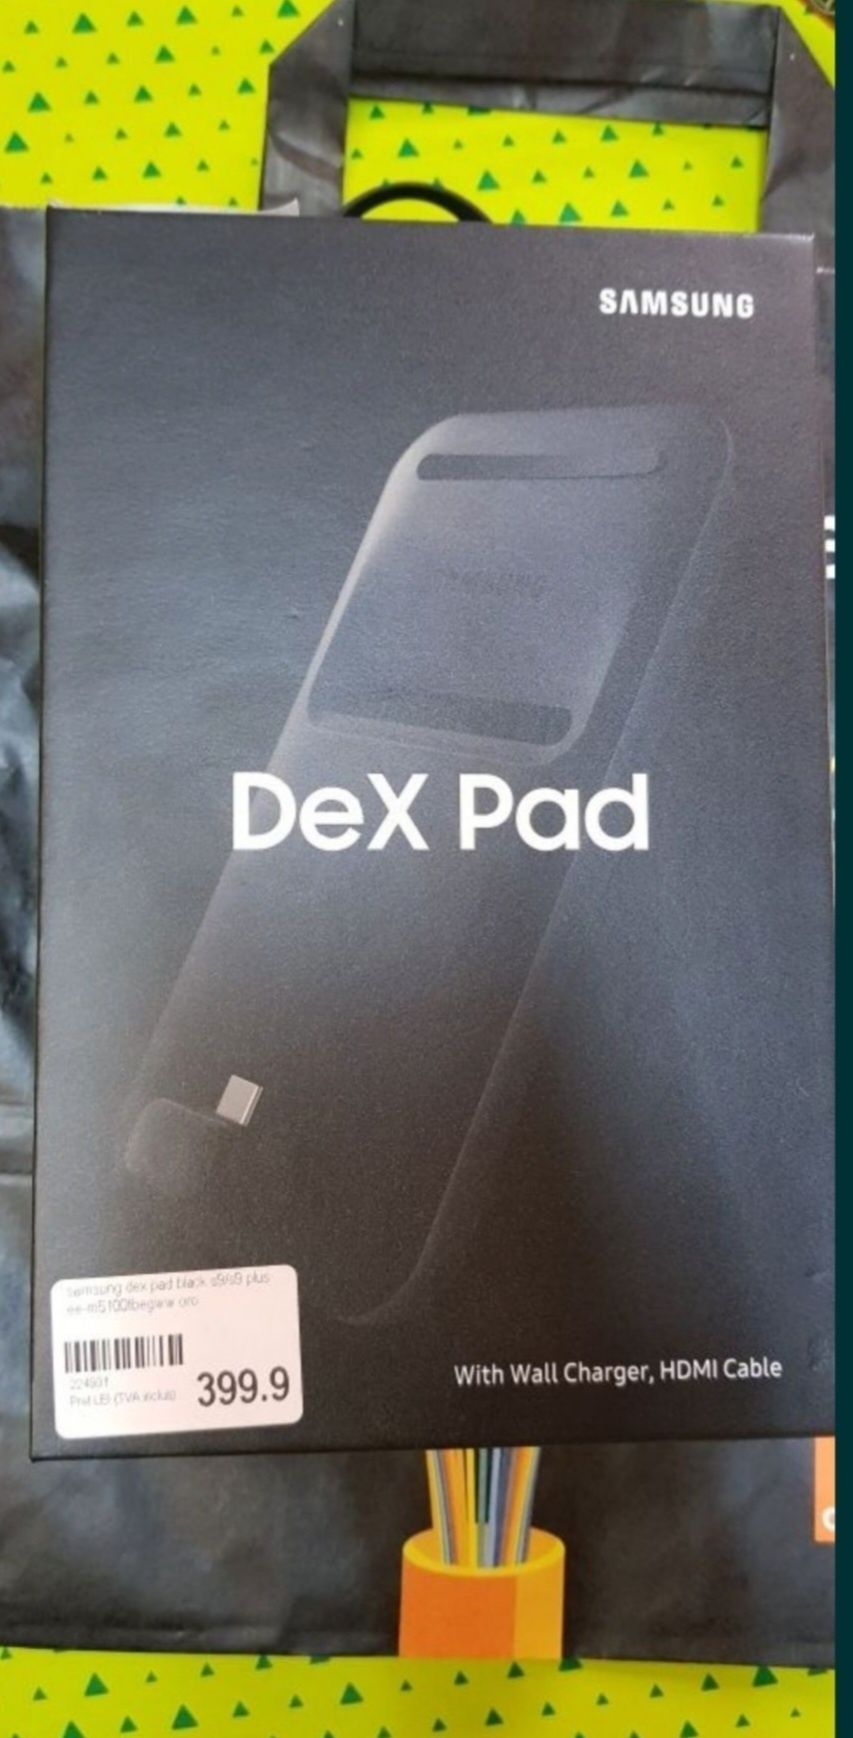 Vând Samsung dex pad